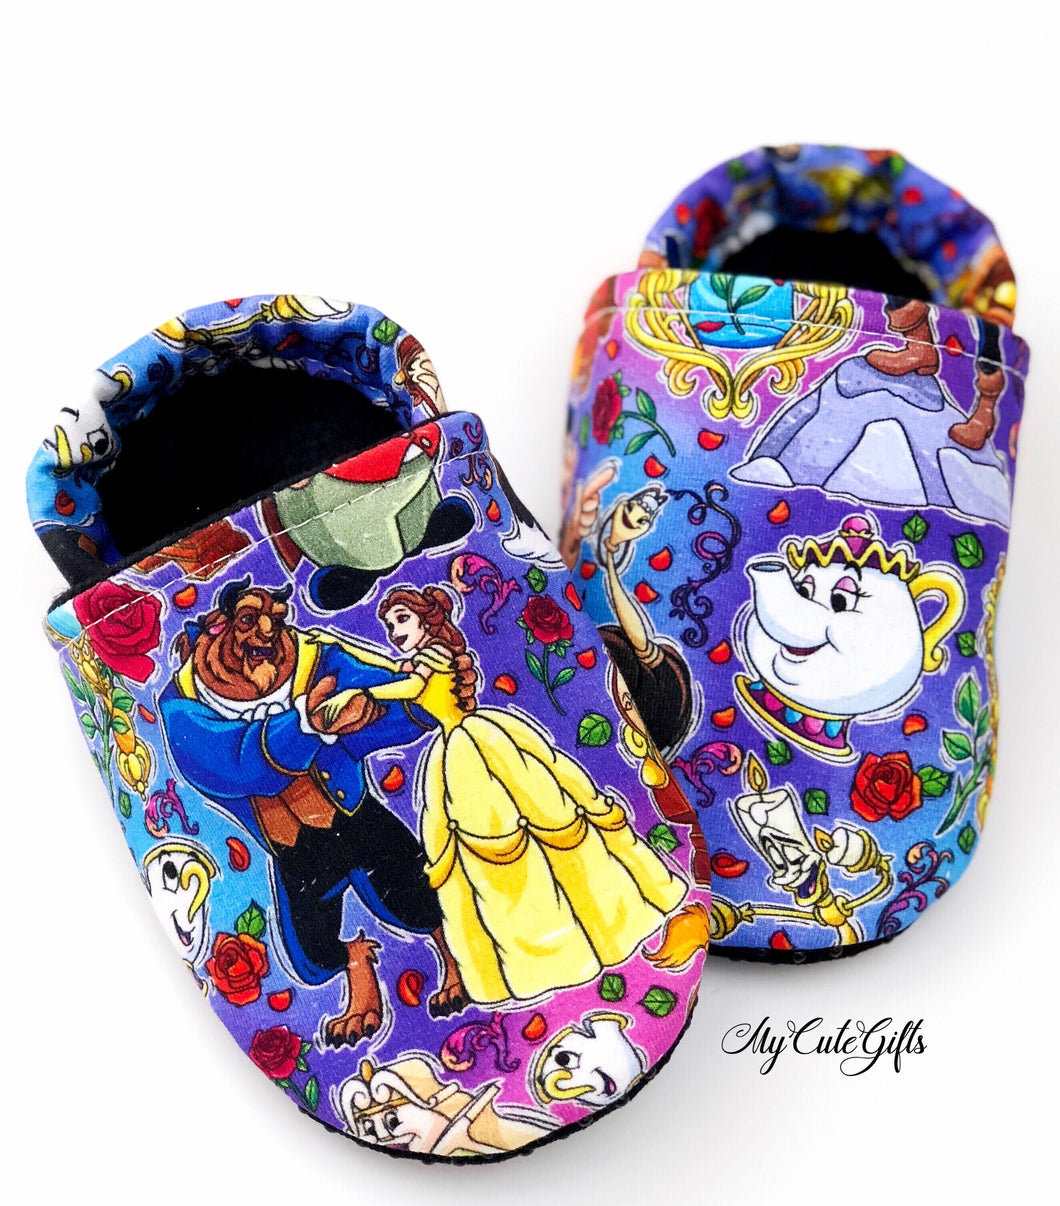 Beauty slippers